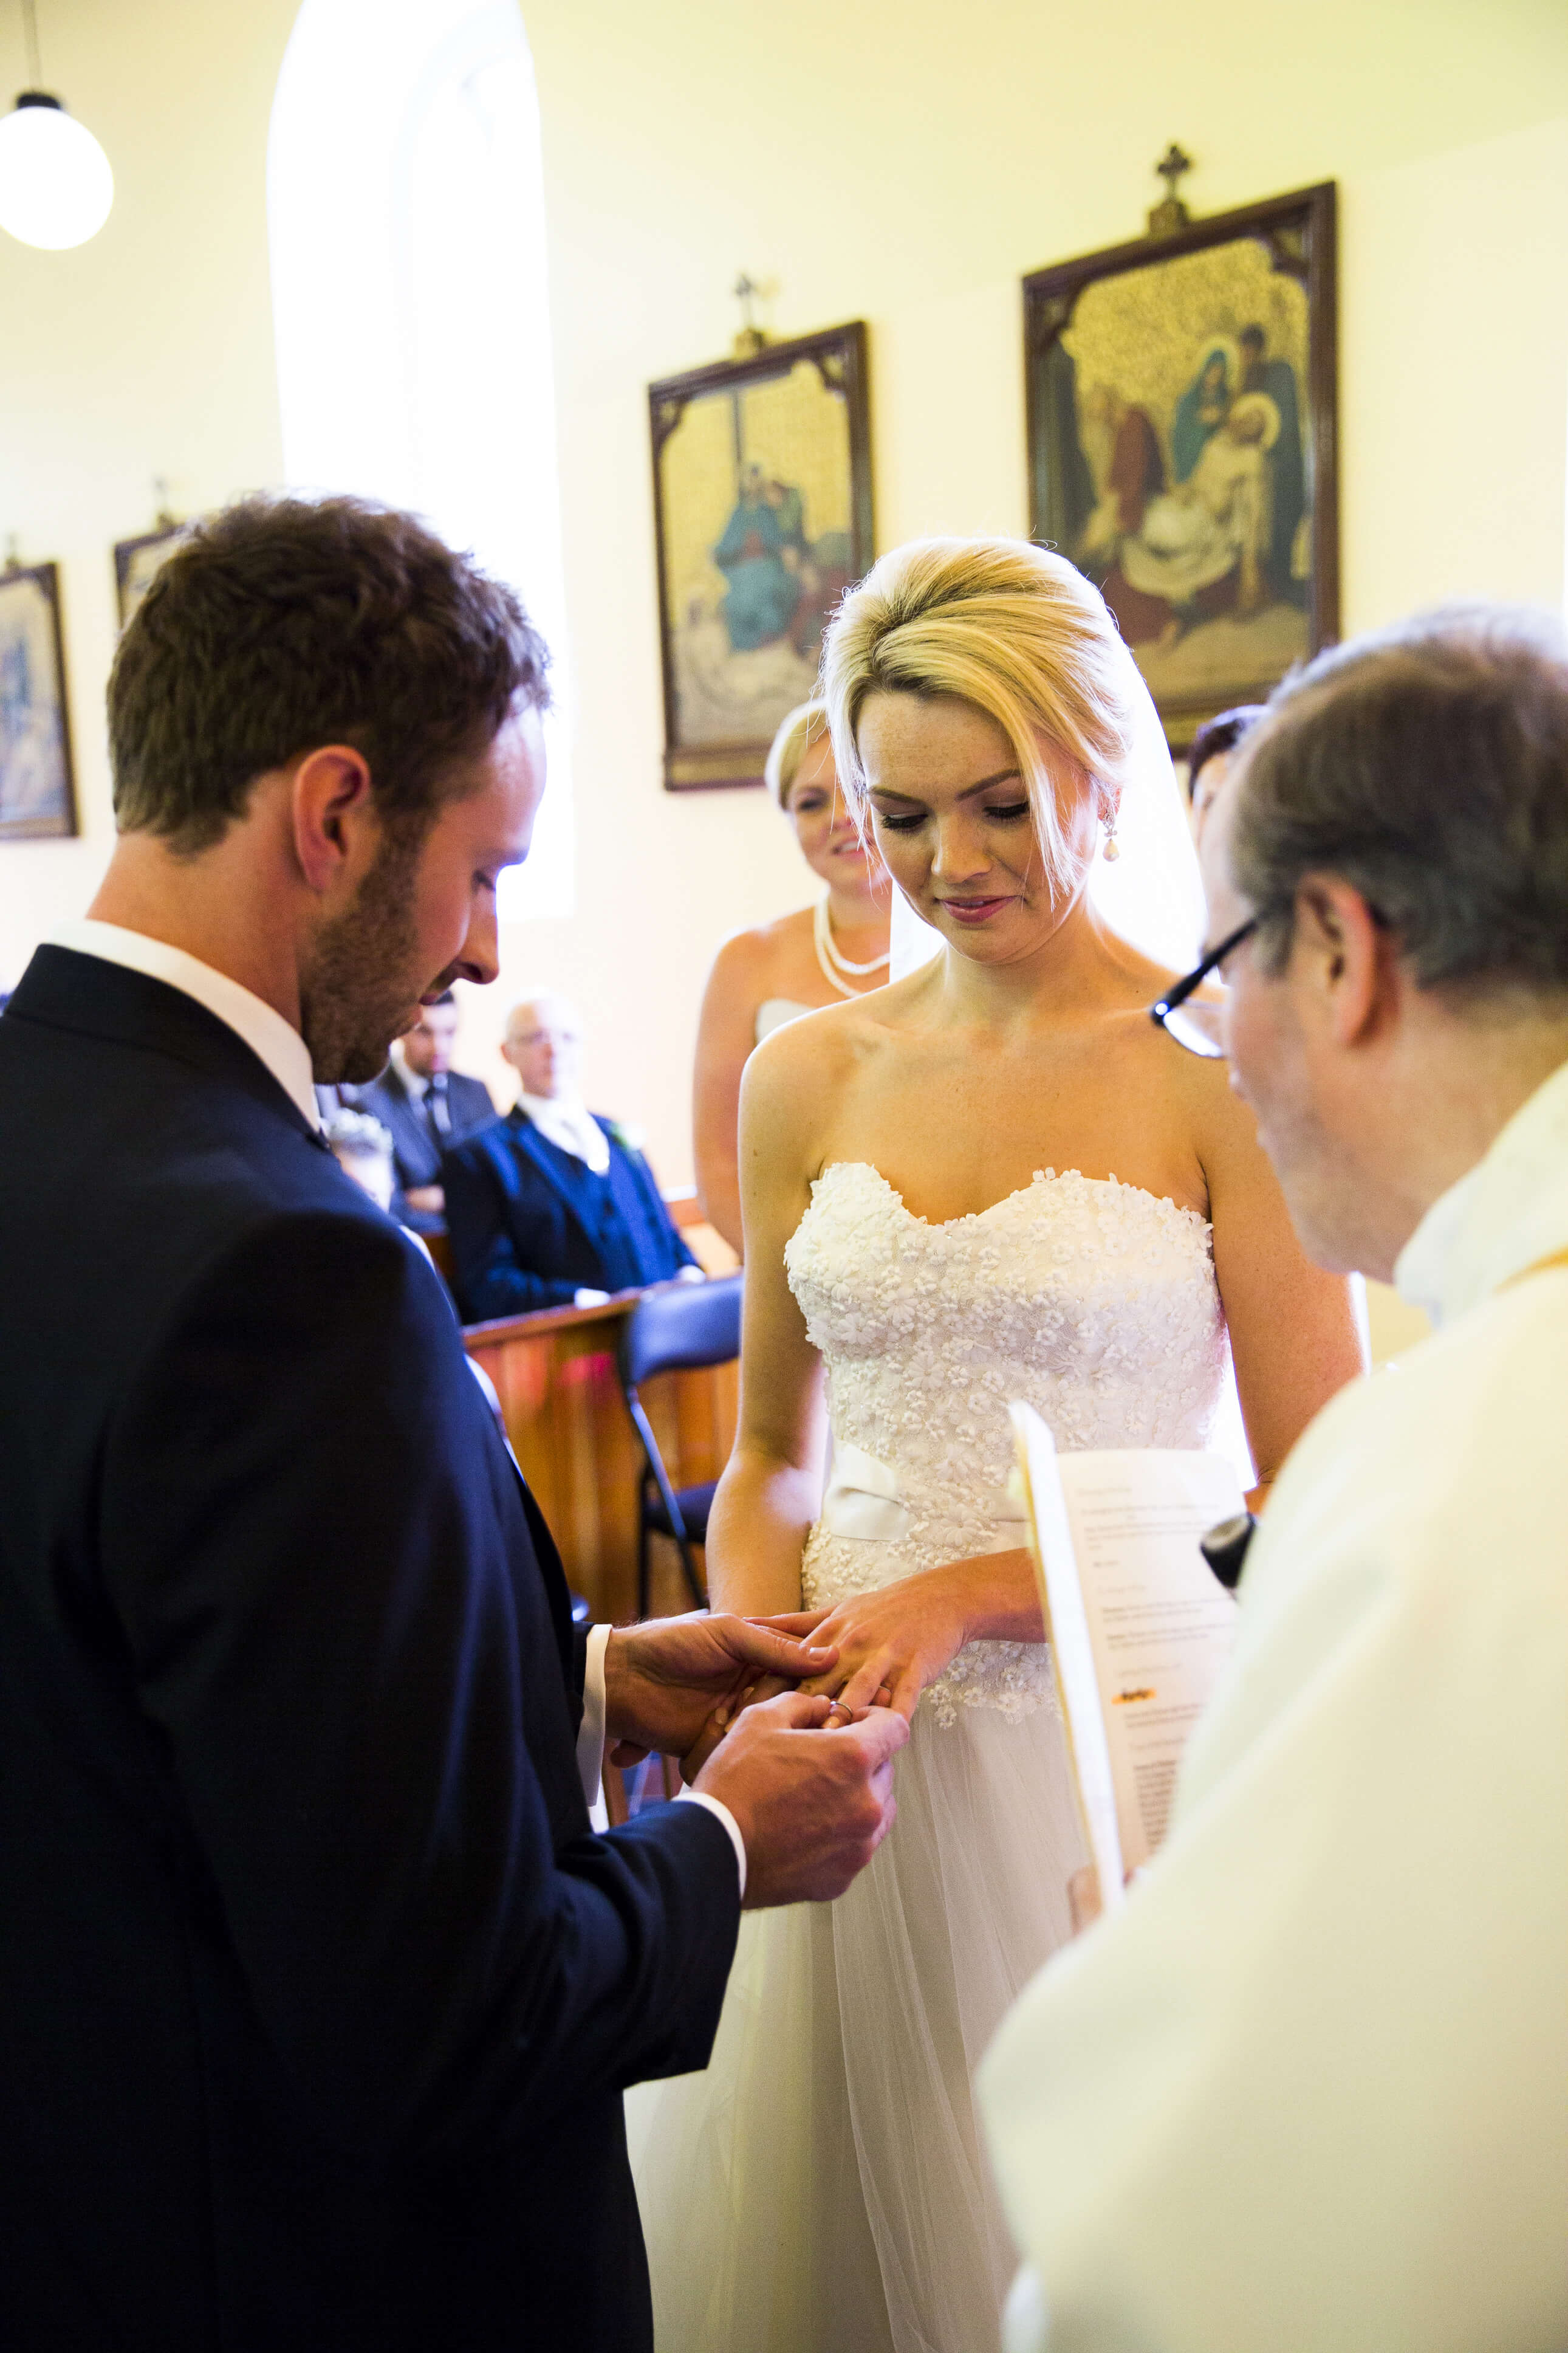 bernard carolan wedding photographer wicklow exchange rings vows